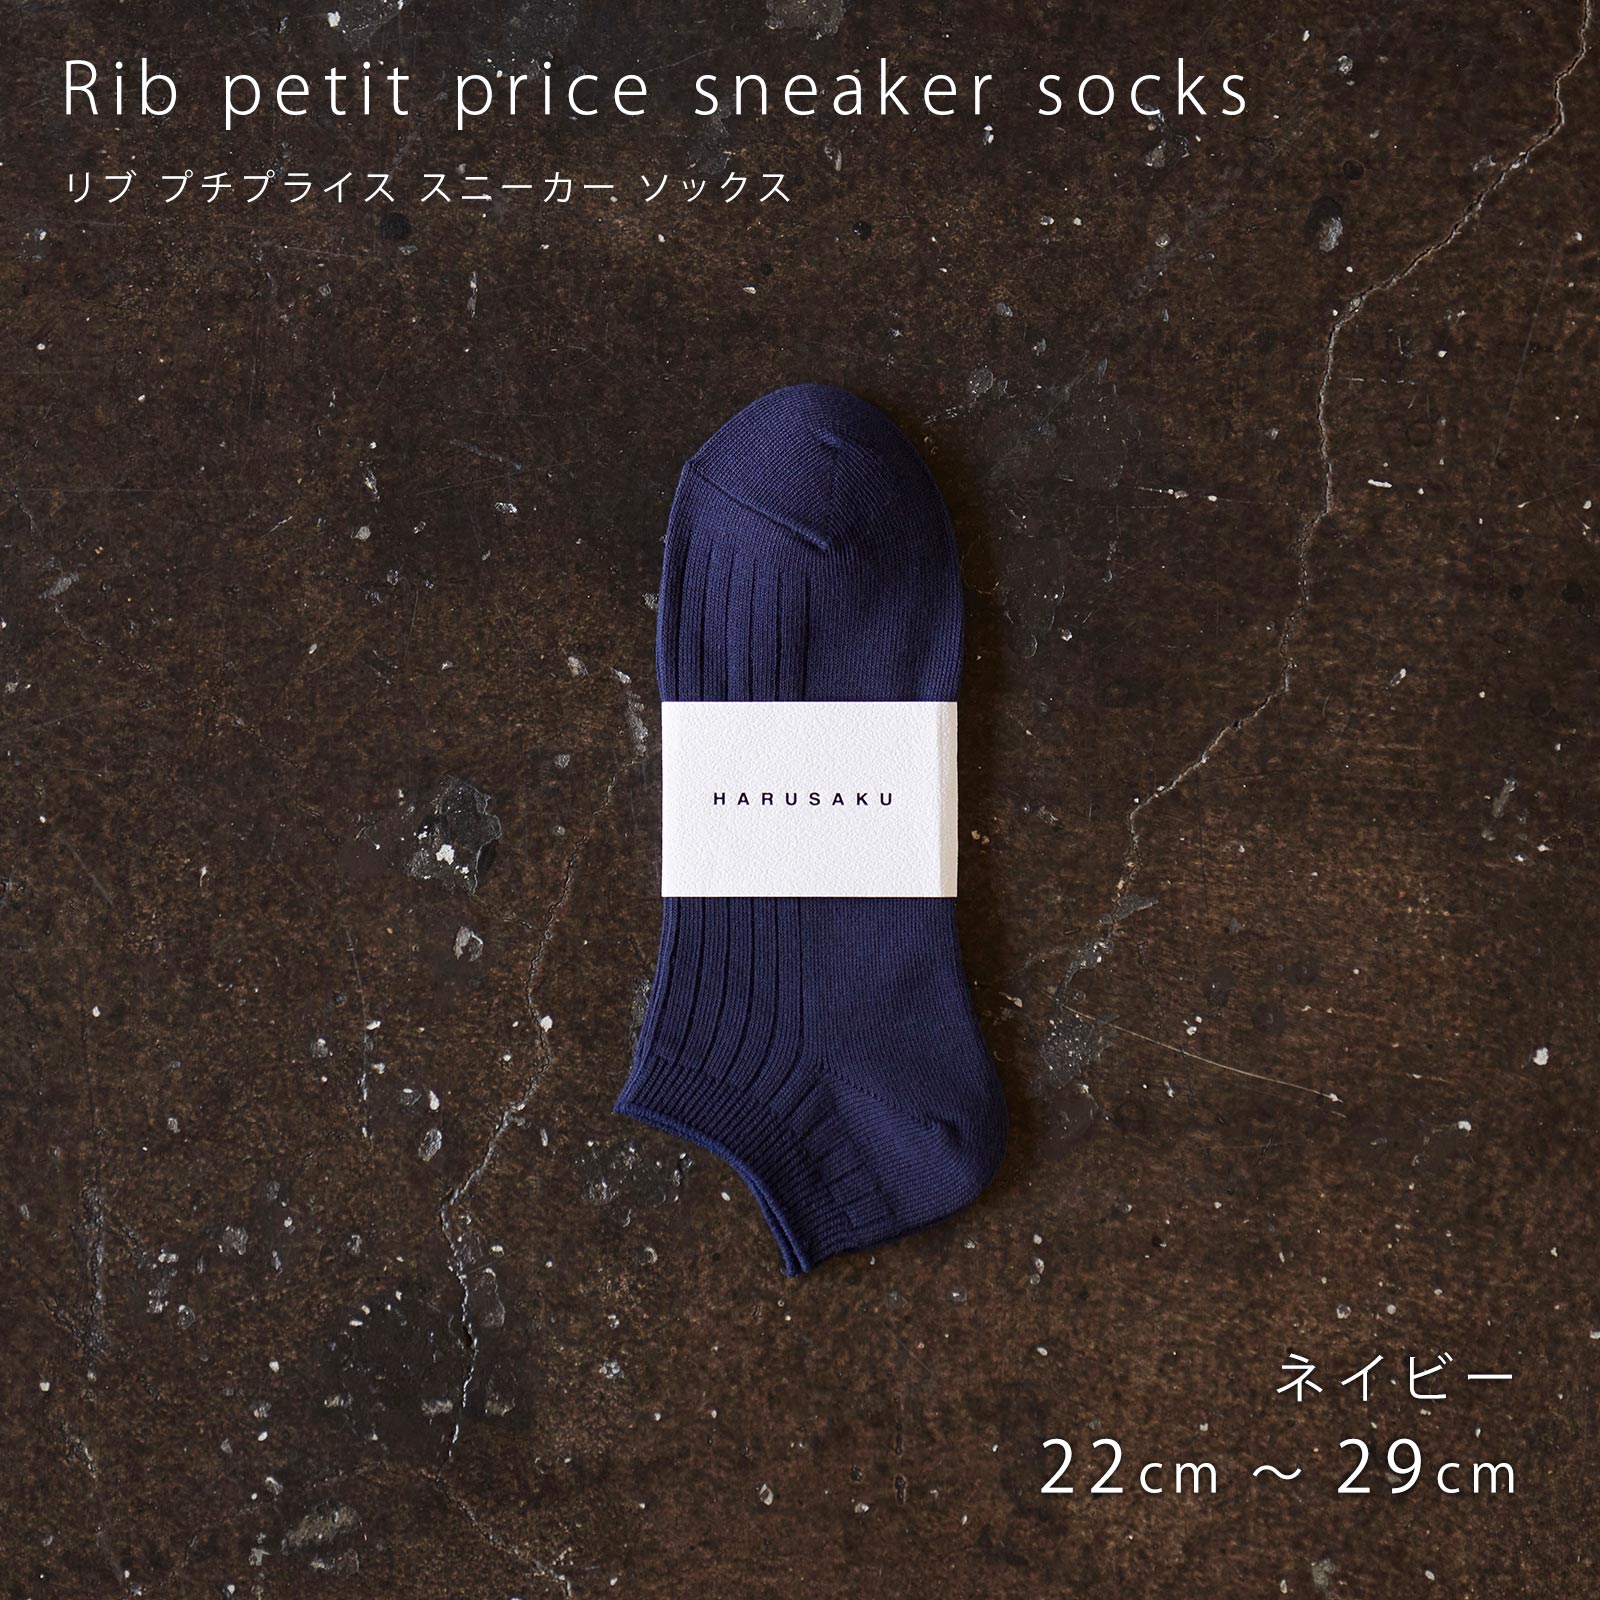 メンズ靴下専門ブランド HARUSAKU / [ CC ] Rib petit price sneaker socks 全色 12P 大人買い set  （208